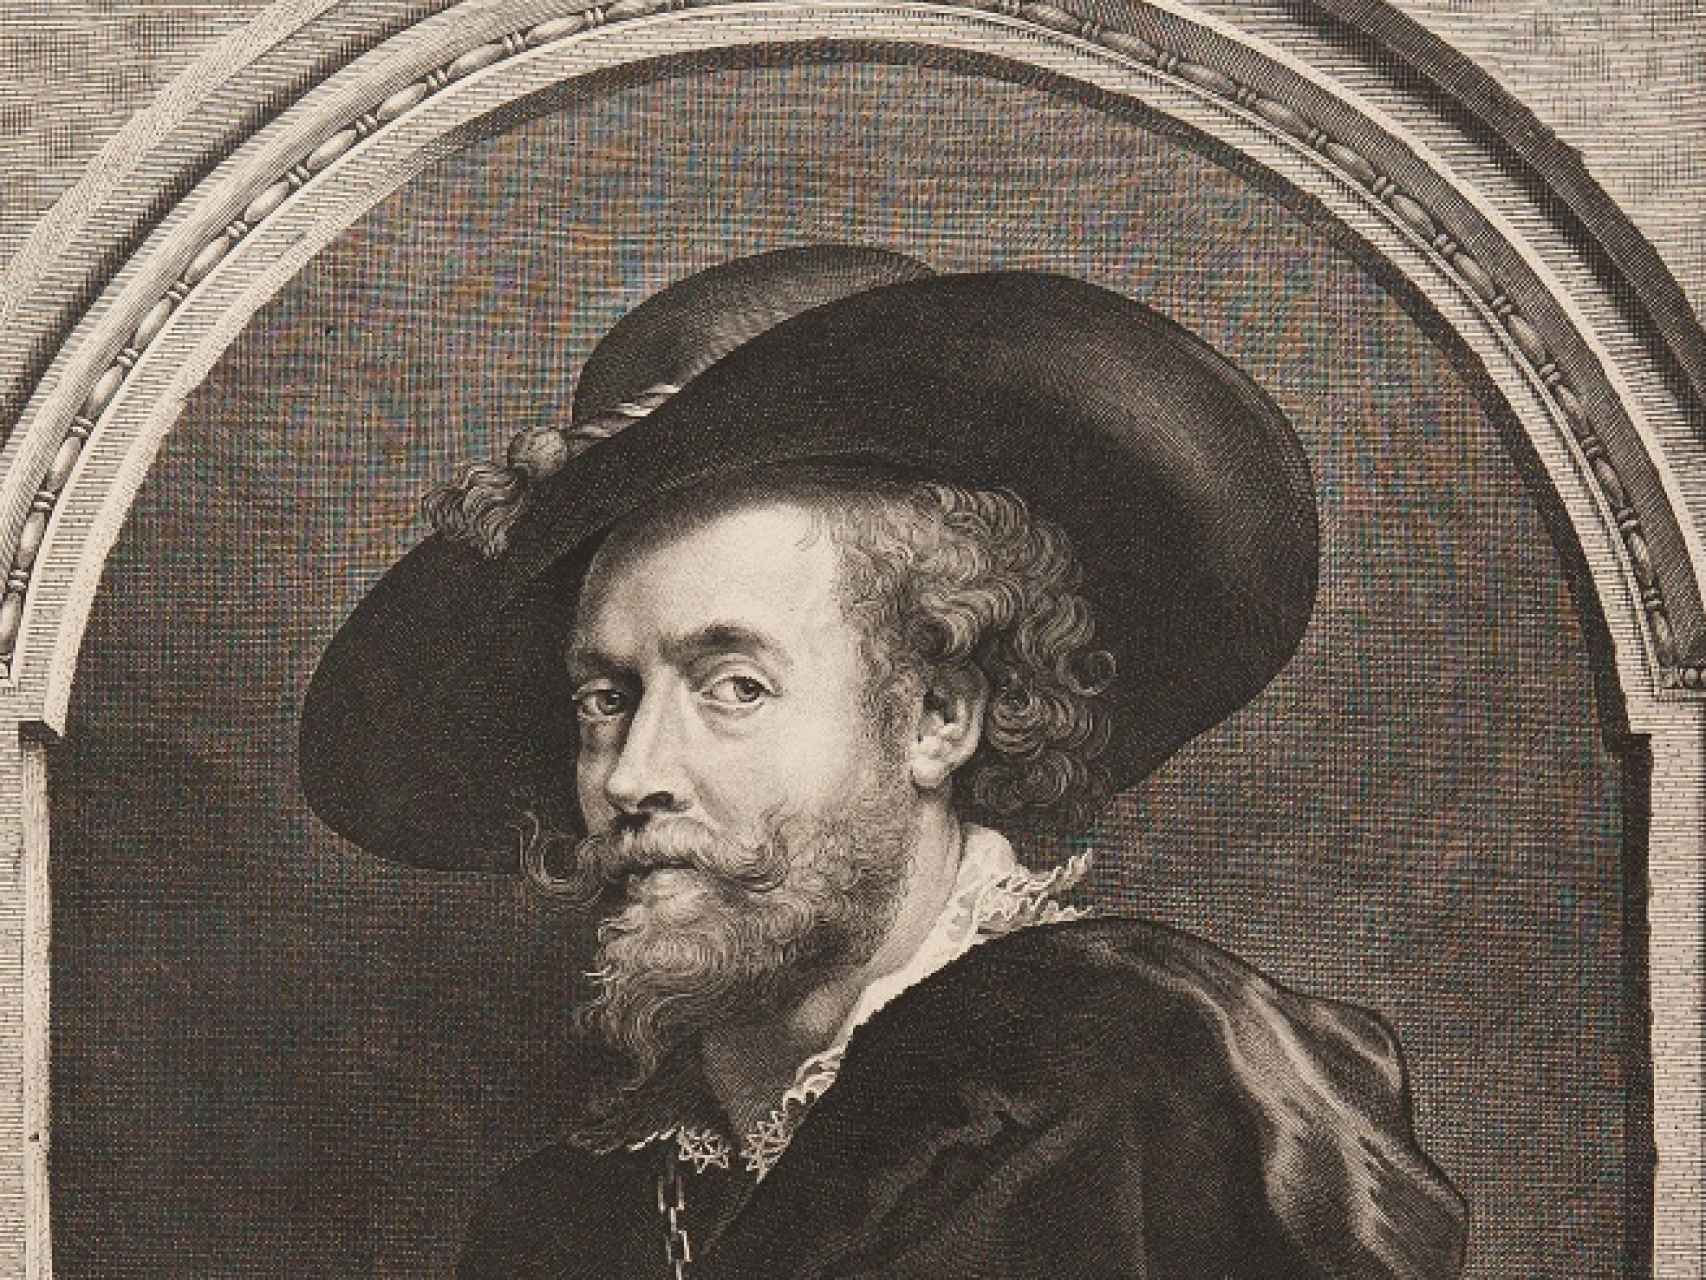 Retrato de Rubens de Paulus Pontius.